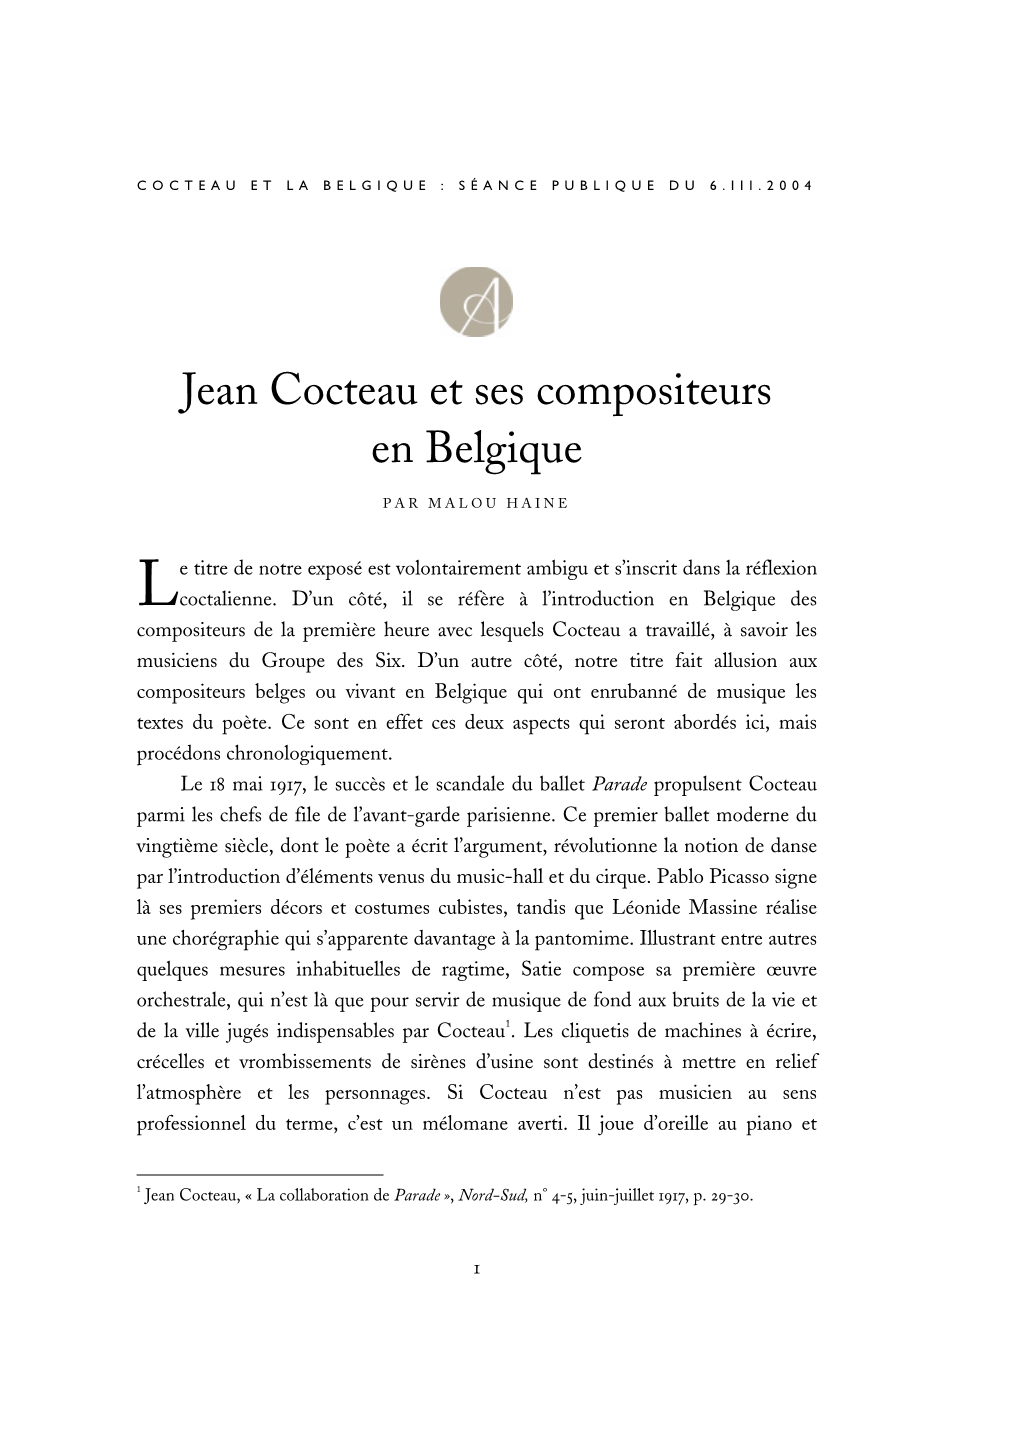 Jean Cocteau Et Ses Compositeurs En Belgique